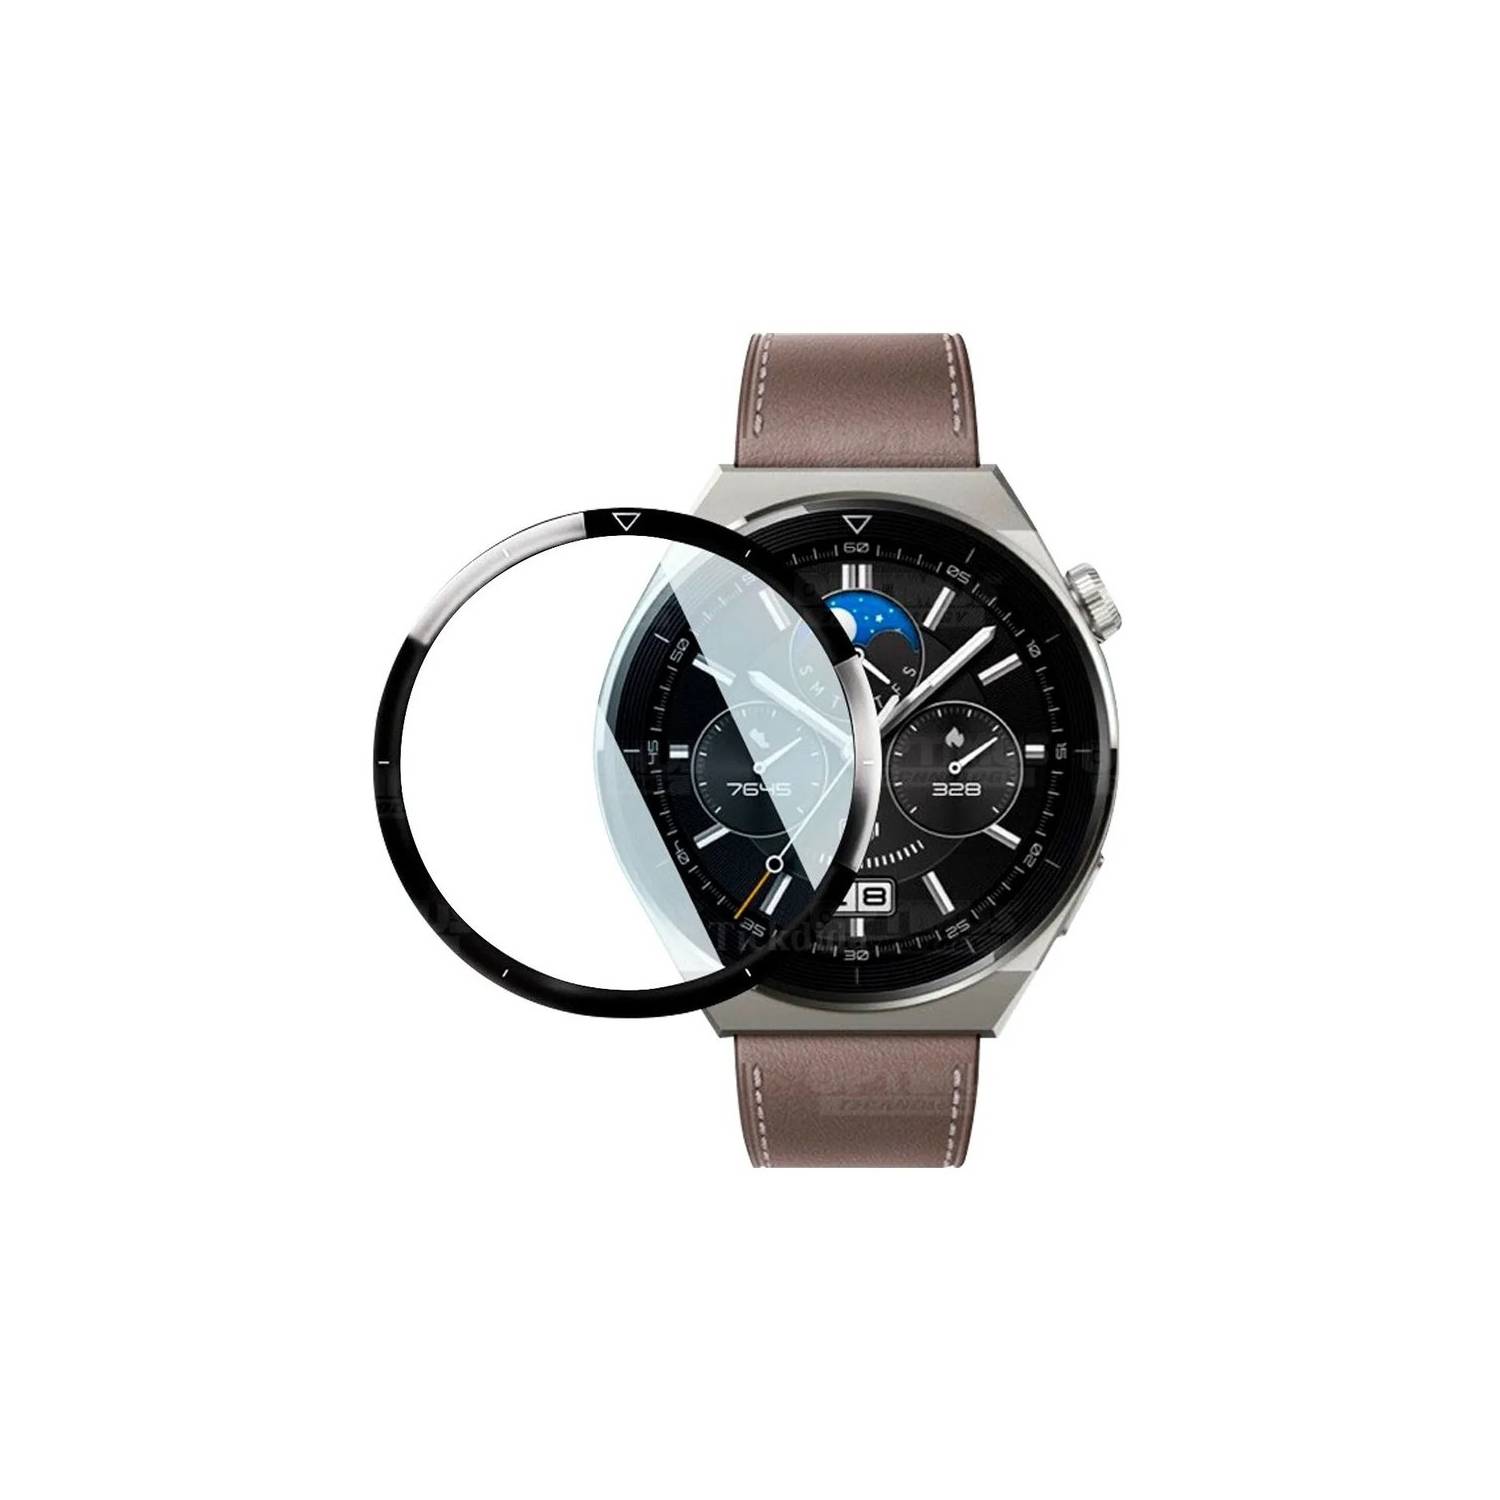 Reloj Huawei Watch Gt3 Pro 46mm